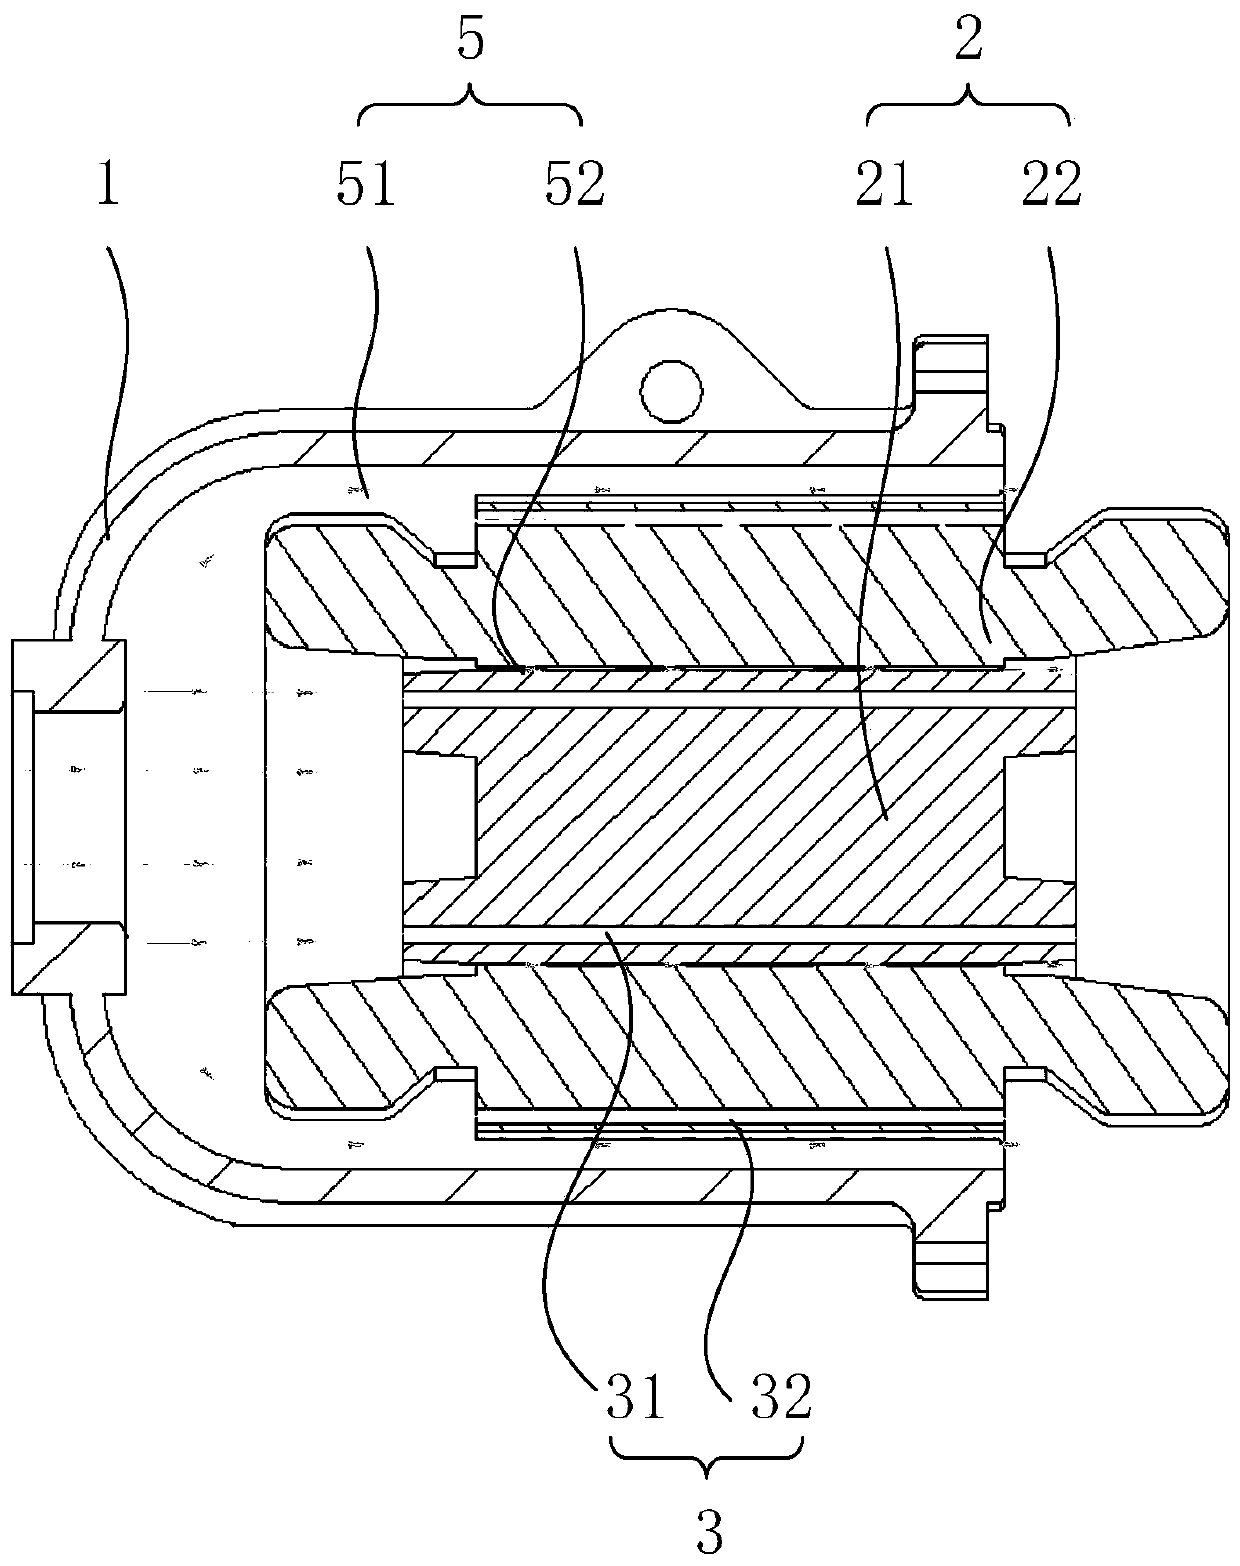 Compressor motor cooling structure, compressor and refrigeration system